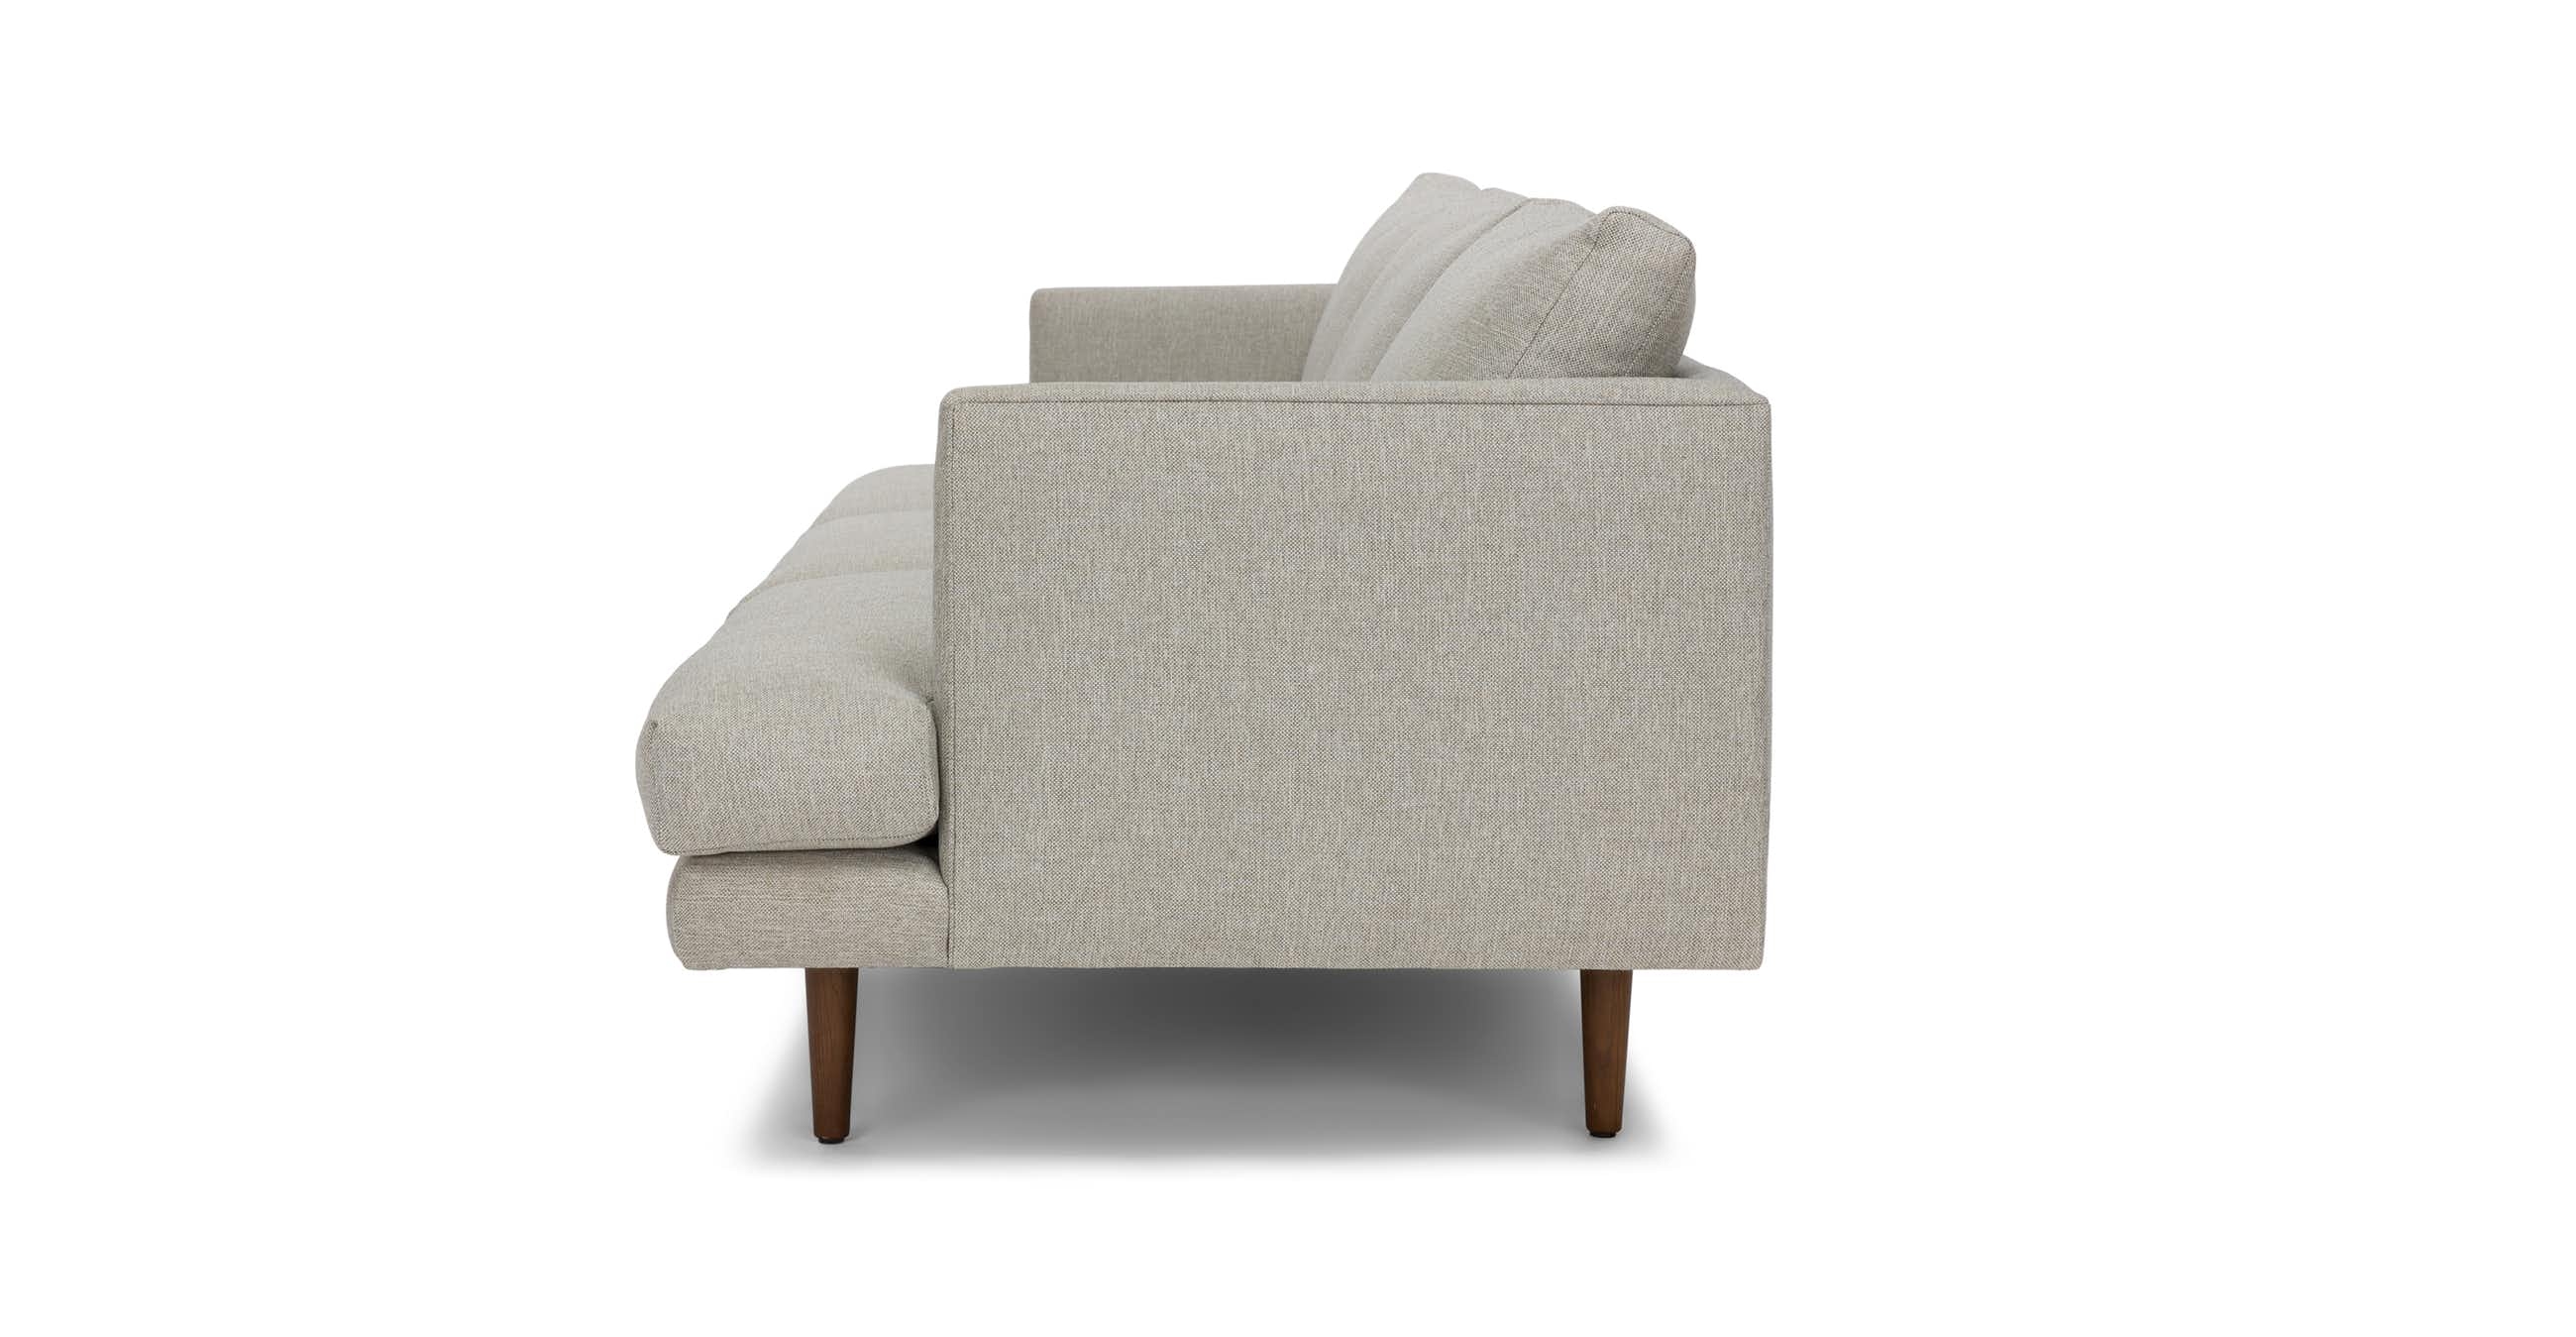 Burrard Seasalt Gray Sofa - Image 4